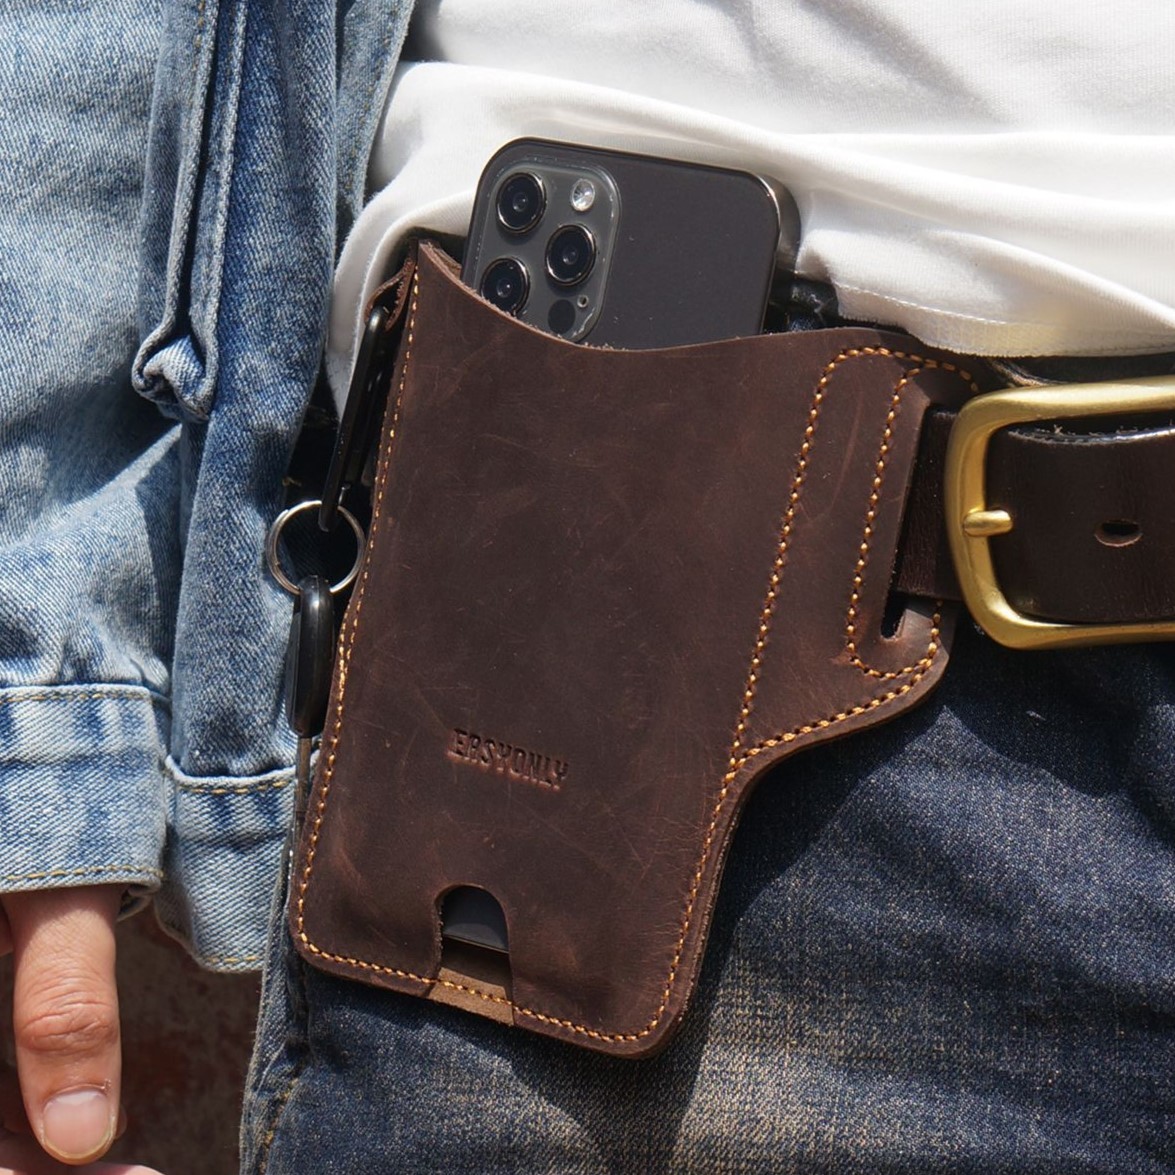  новый товар   натуральная кожа   кожа   сотовый телефон  для  талия  сумка   ключ  держатель   ключ  крюк    смартфон  iPhone  мешочек    карман  ... задний   темный   коричневый   доставка бесплатно 